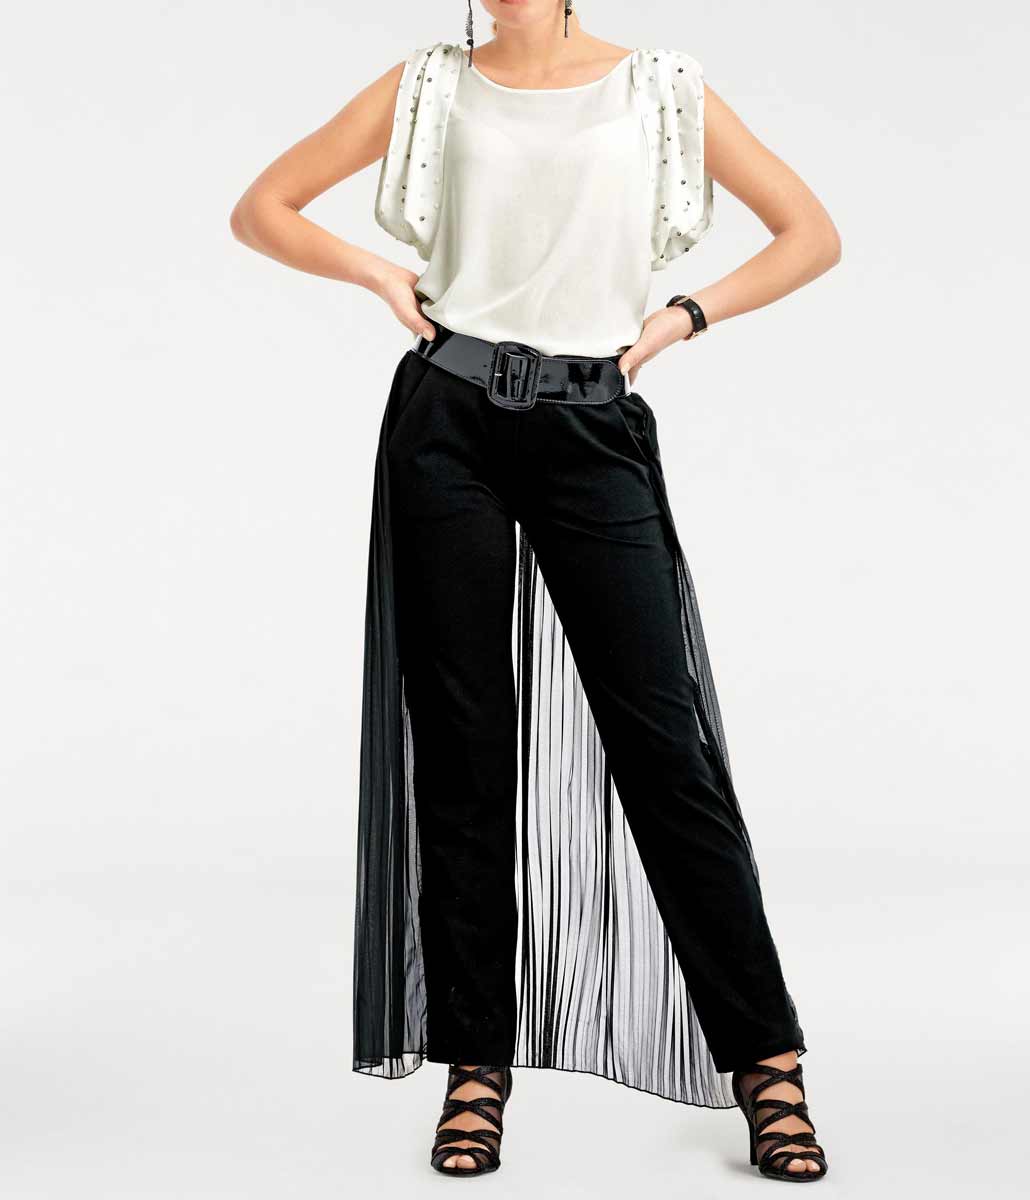 Ashley Brooke Damen Designer-Hose mit Chiffonüberwurf, schwarz